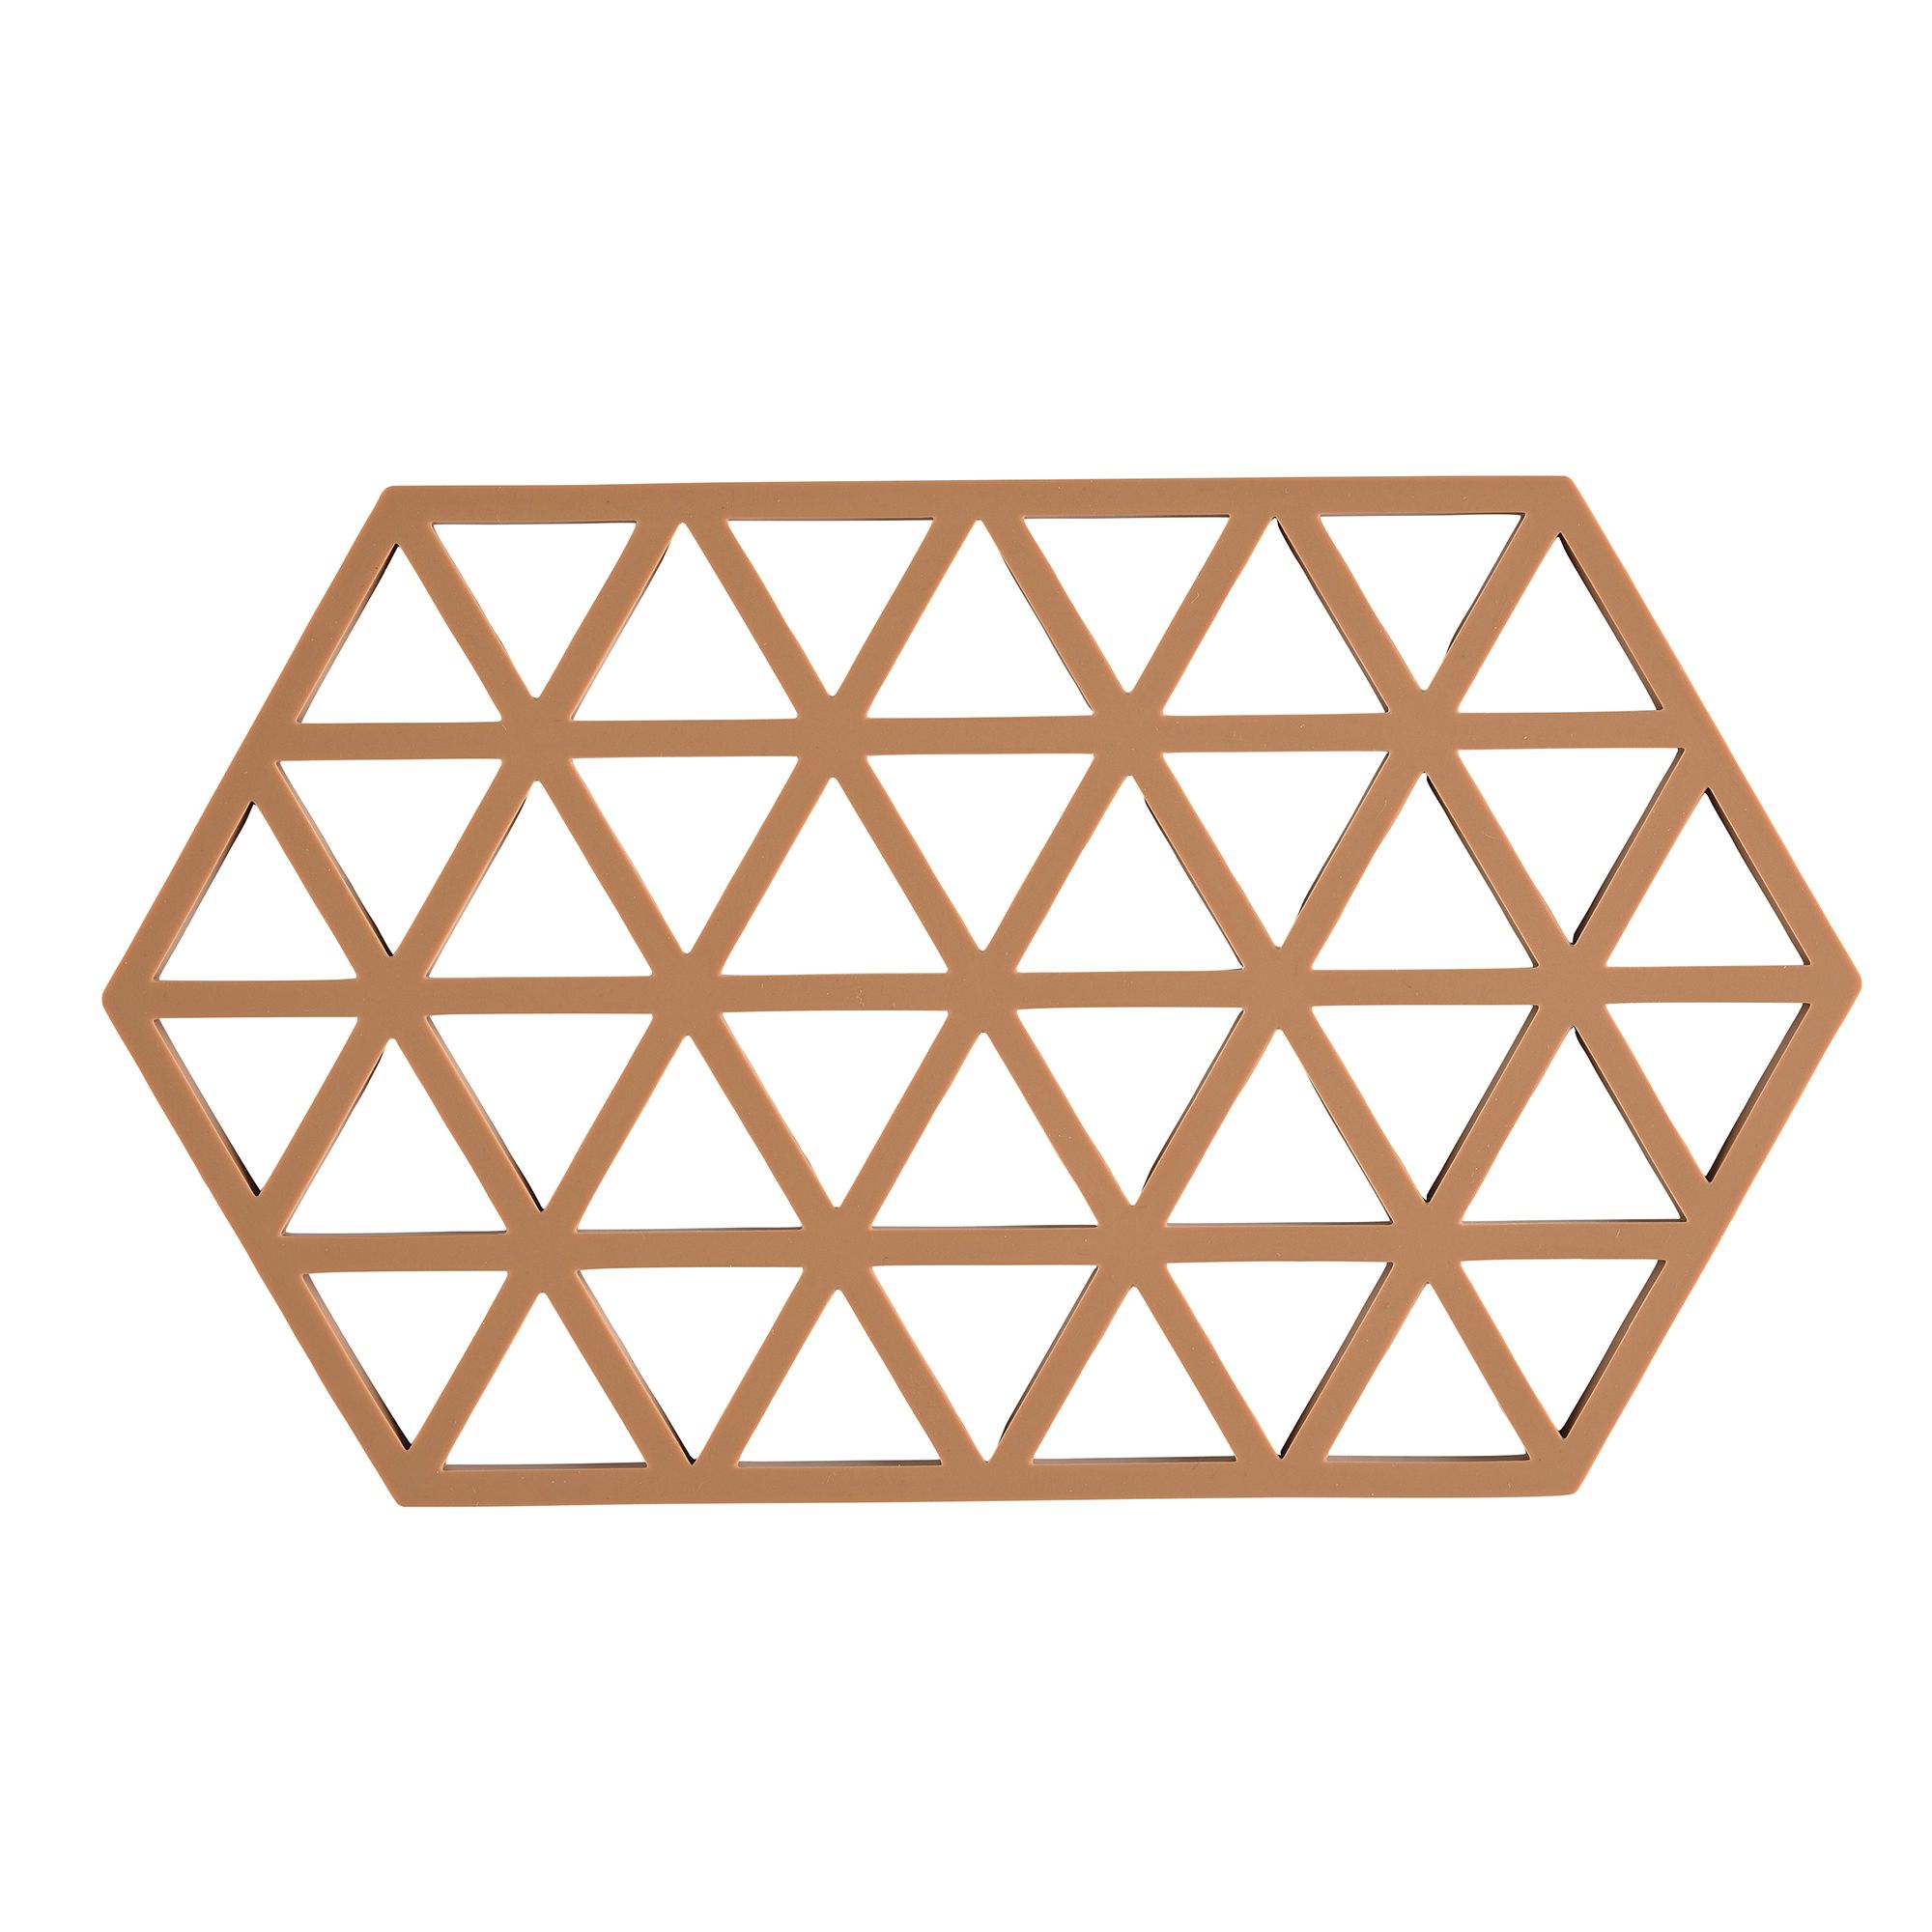 Zone - Triangles trivet - Light Terracotta